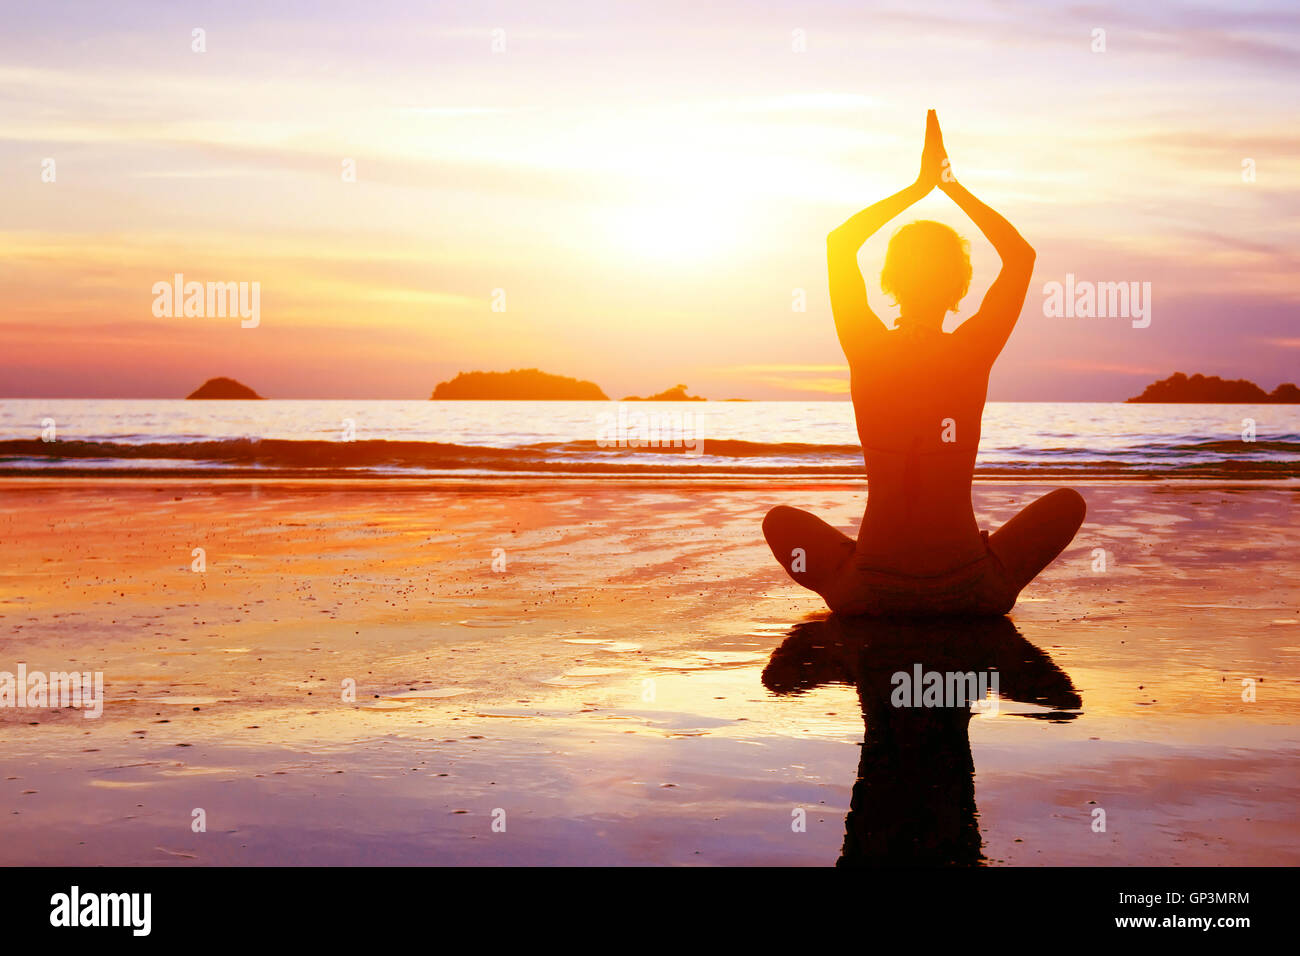 El yoga y la vida sana de fondo, silueta abstracta de mujer meditando en la playa Foto de stock